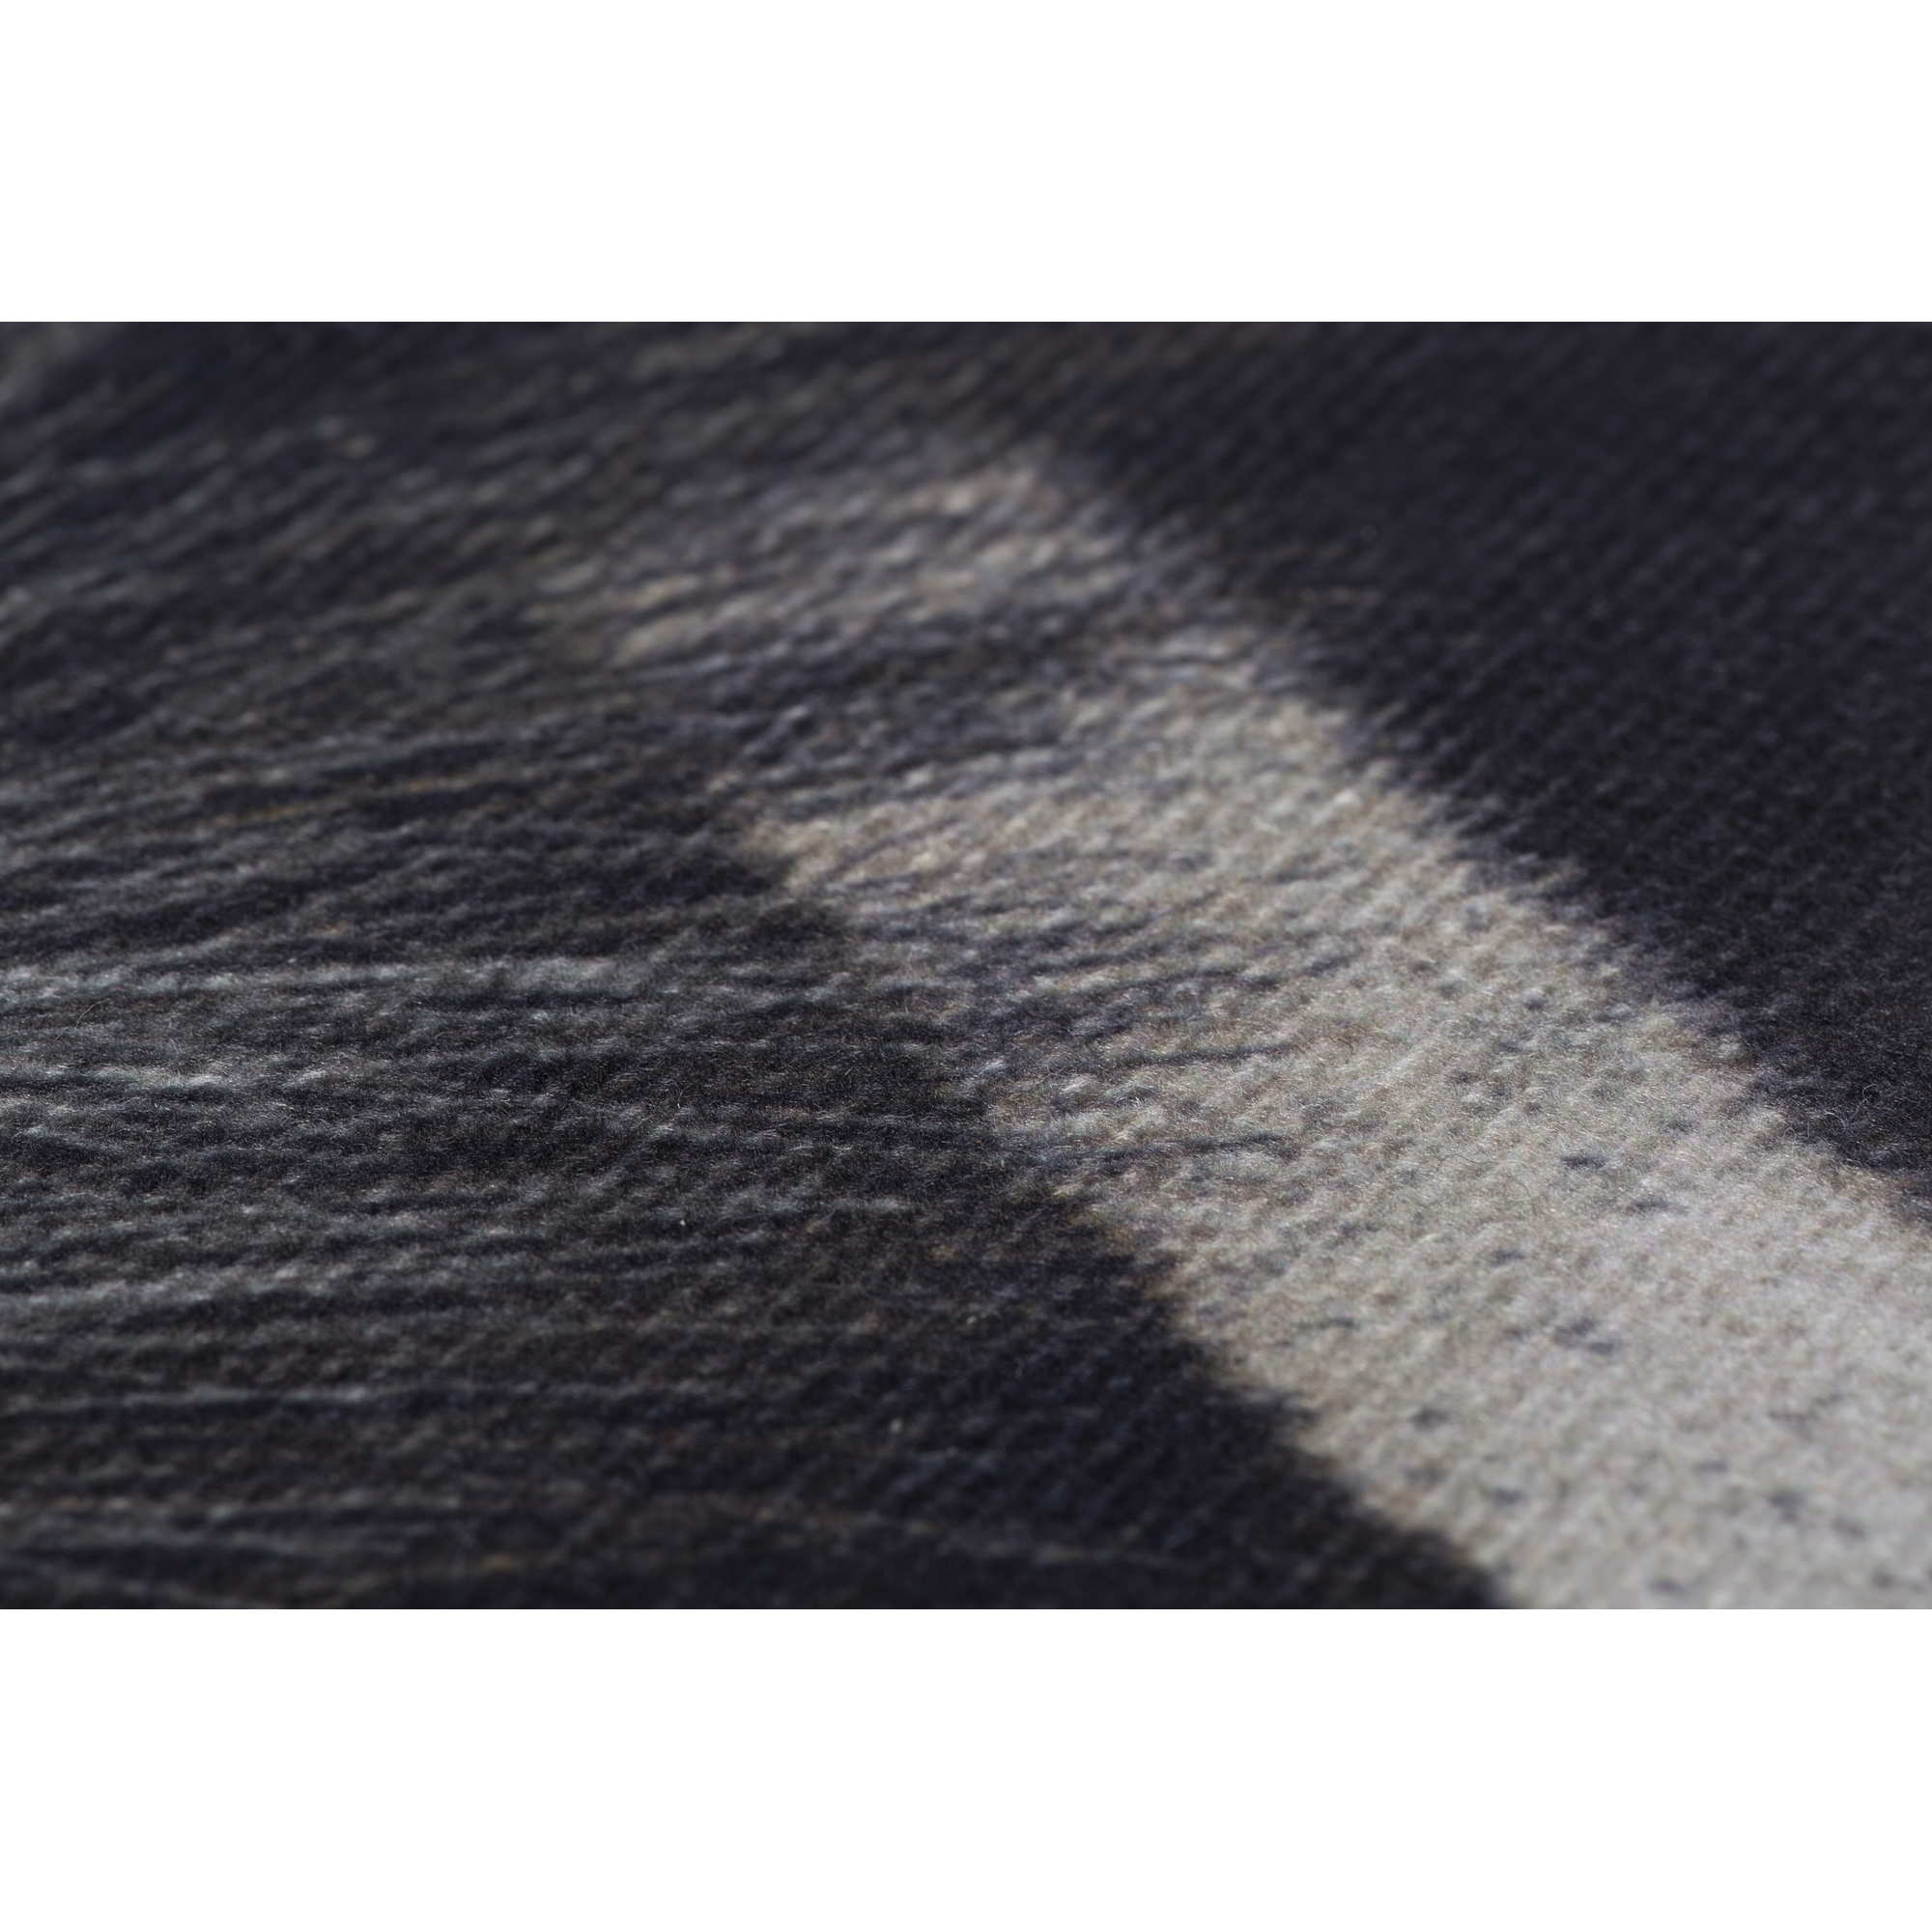 Kunst-Zebrafell 'Amarillo' schwarz/weiß 77 x 95 cm + product picture